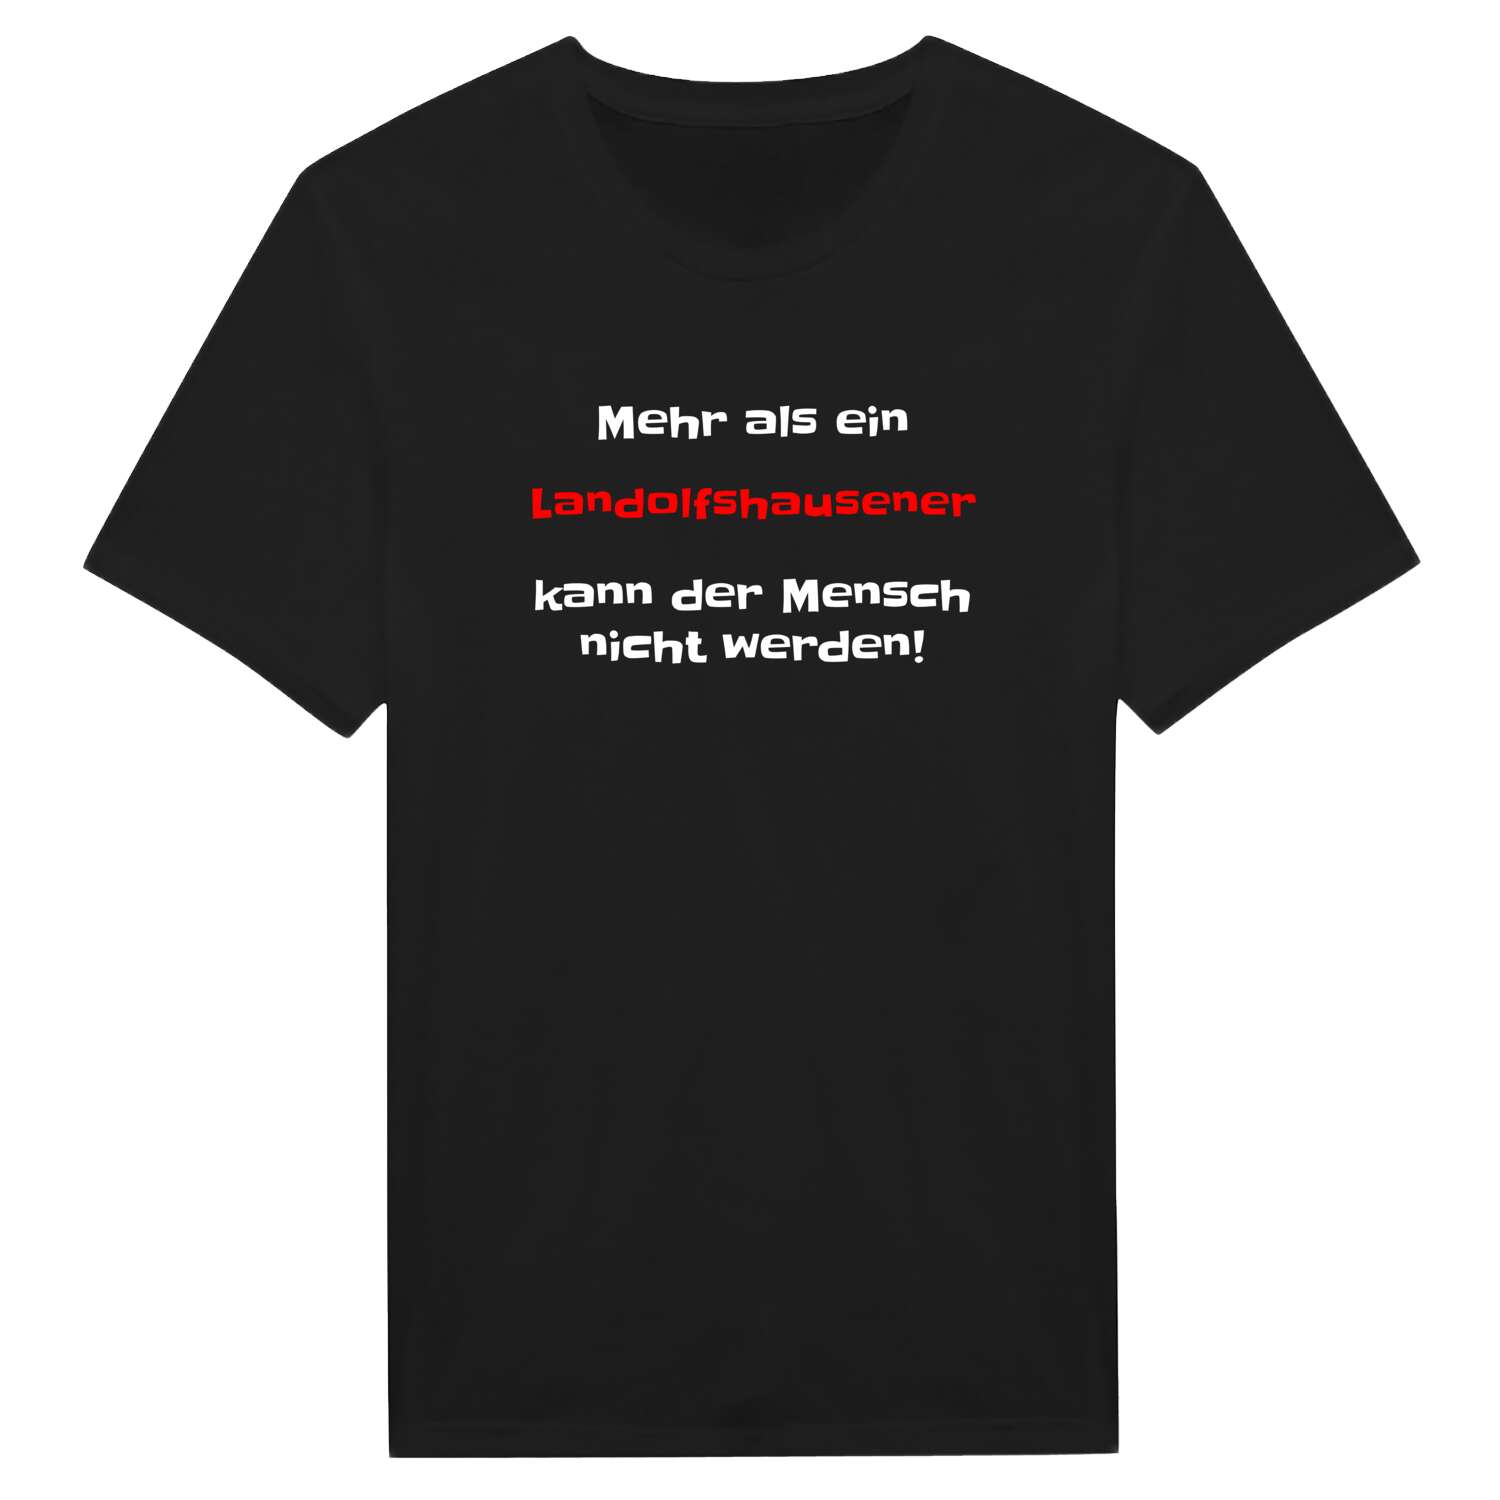 Landolfshausen T-Shirt »Mehr als ein«